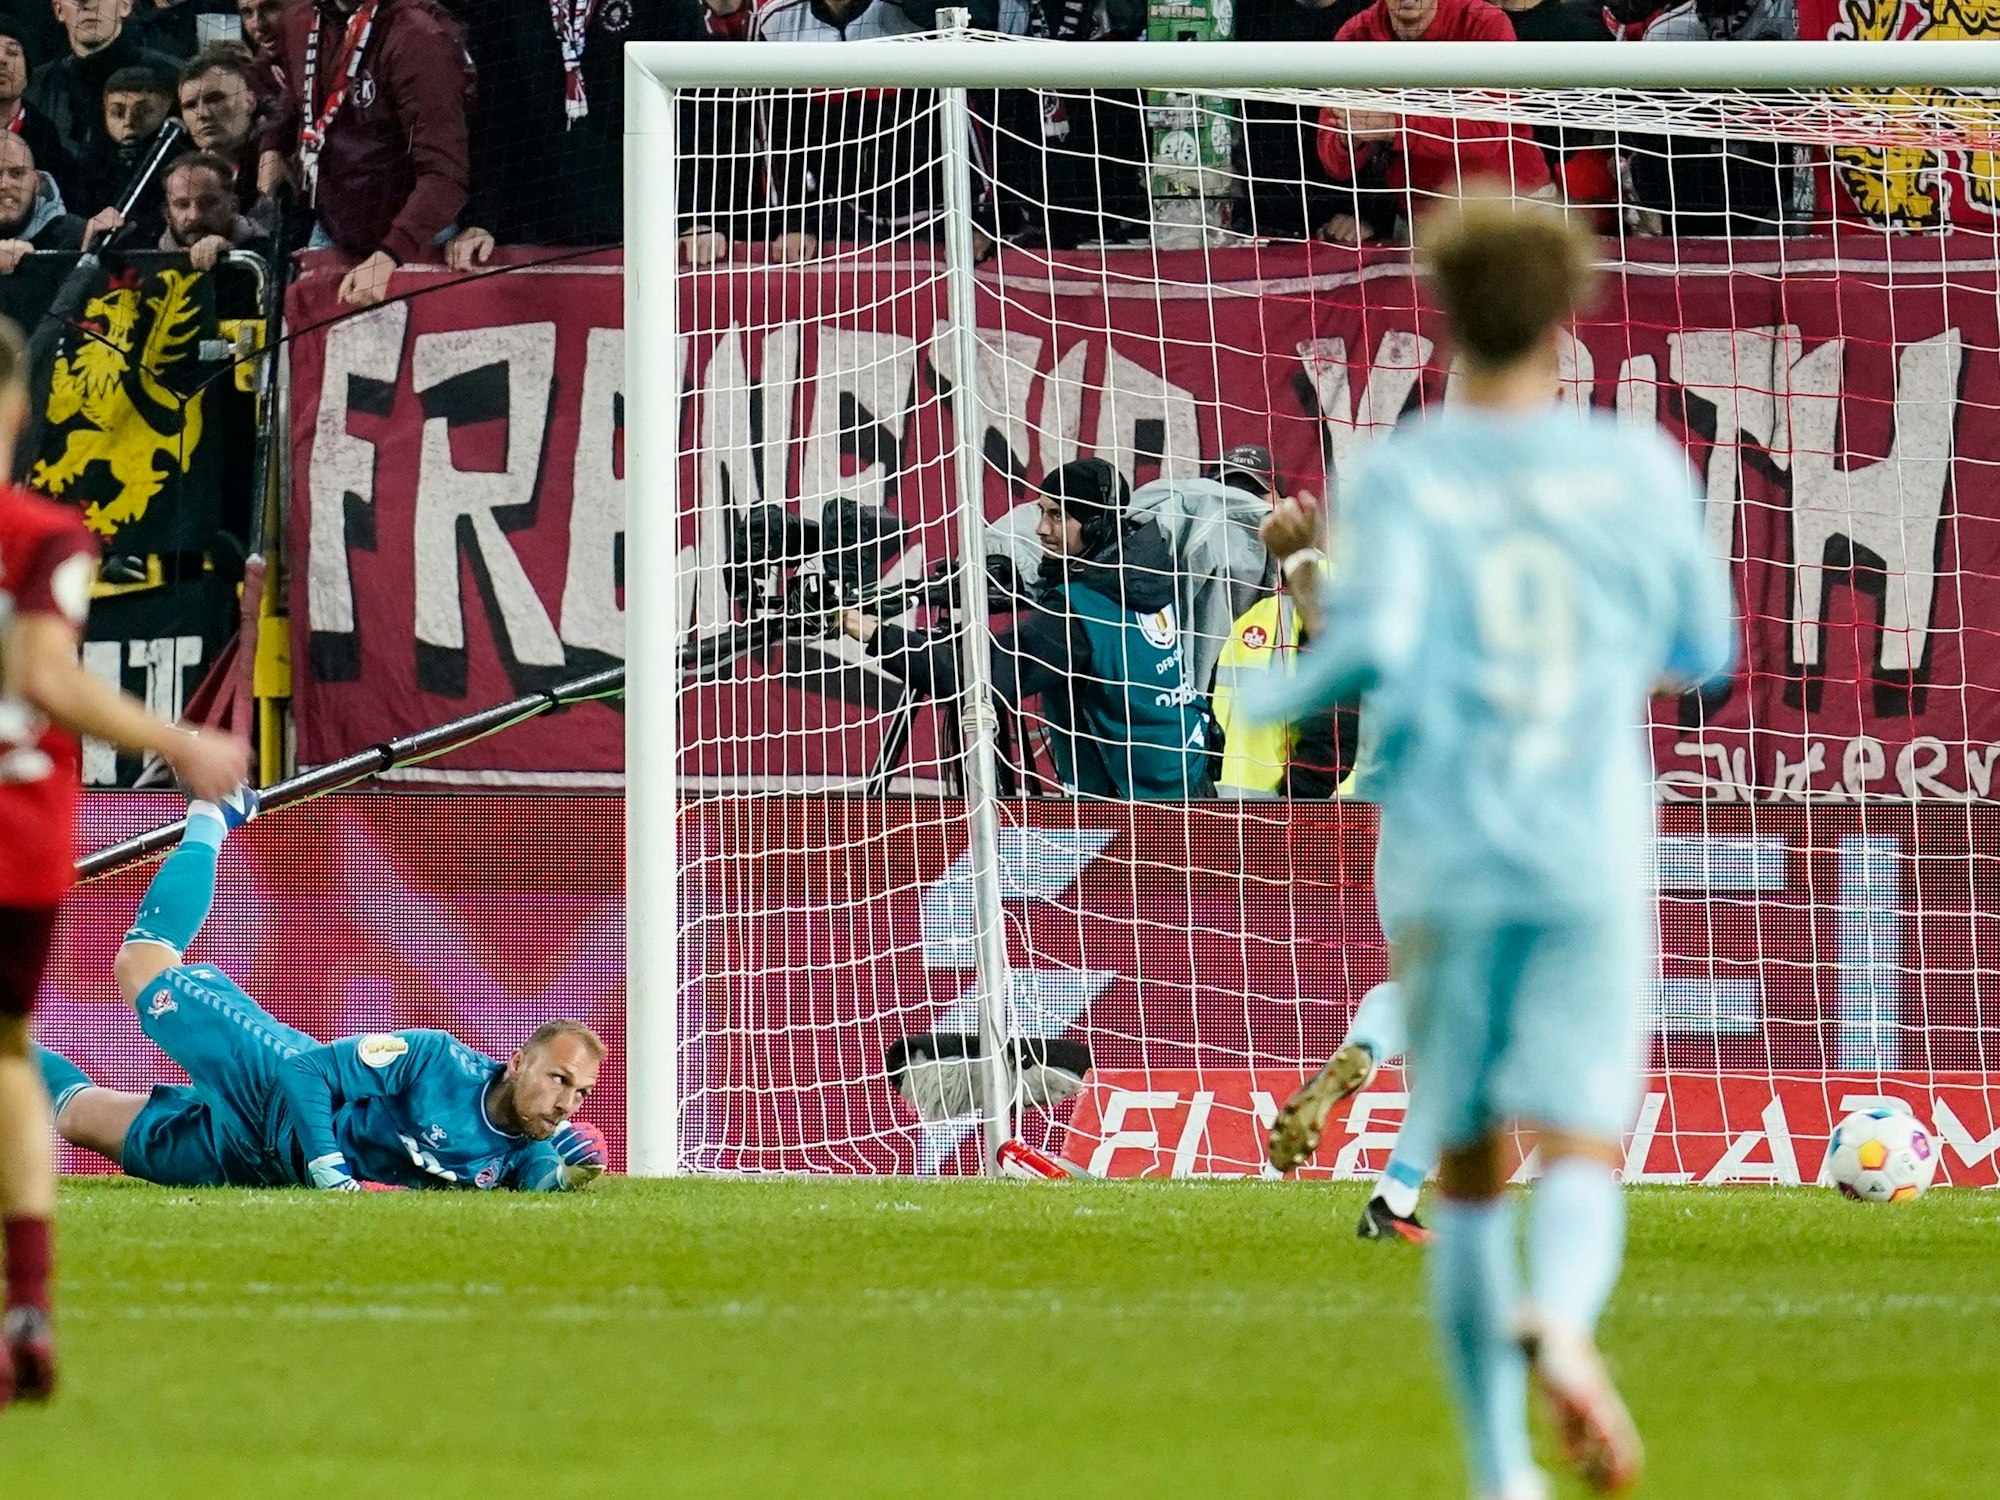 Der 1. FC Köln kassiert im DFB-Pokal ein Gegentor beim 1. FC Kaiserslautern. Marvin Schwäbe liegt geschlagen am Boden.